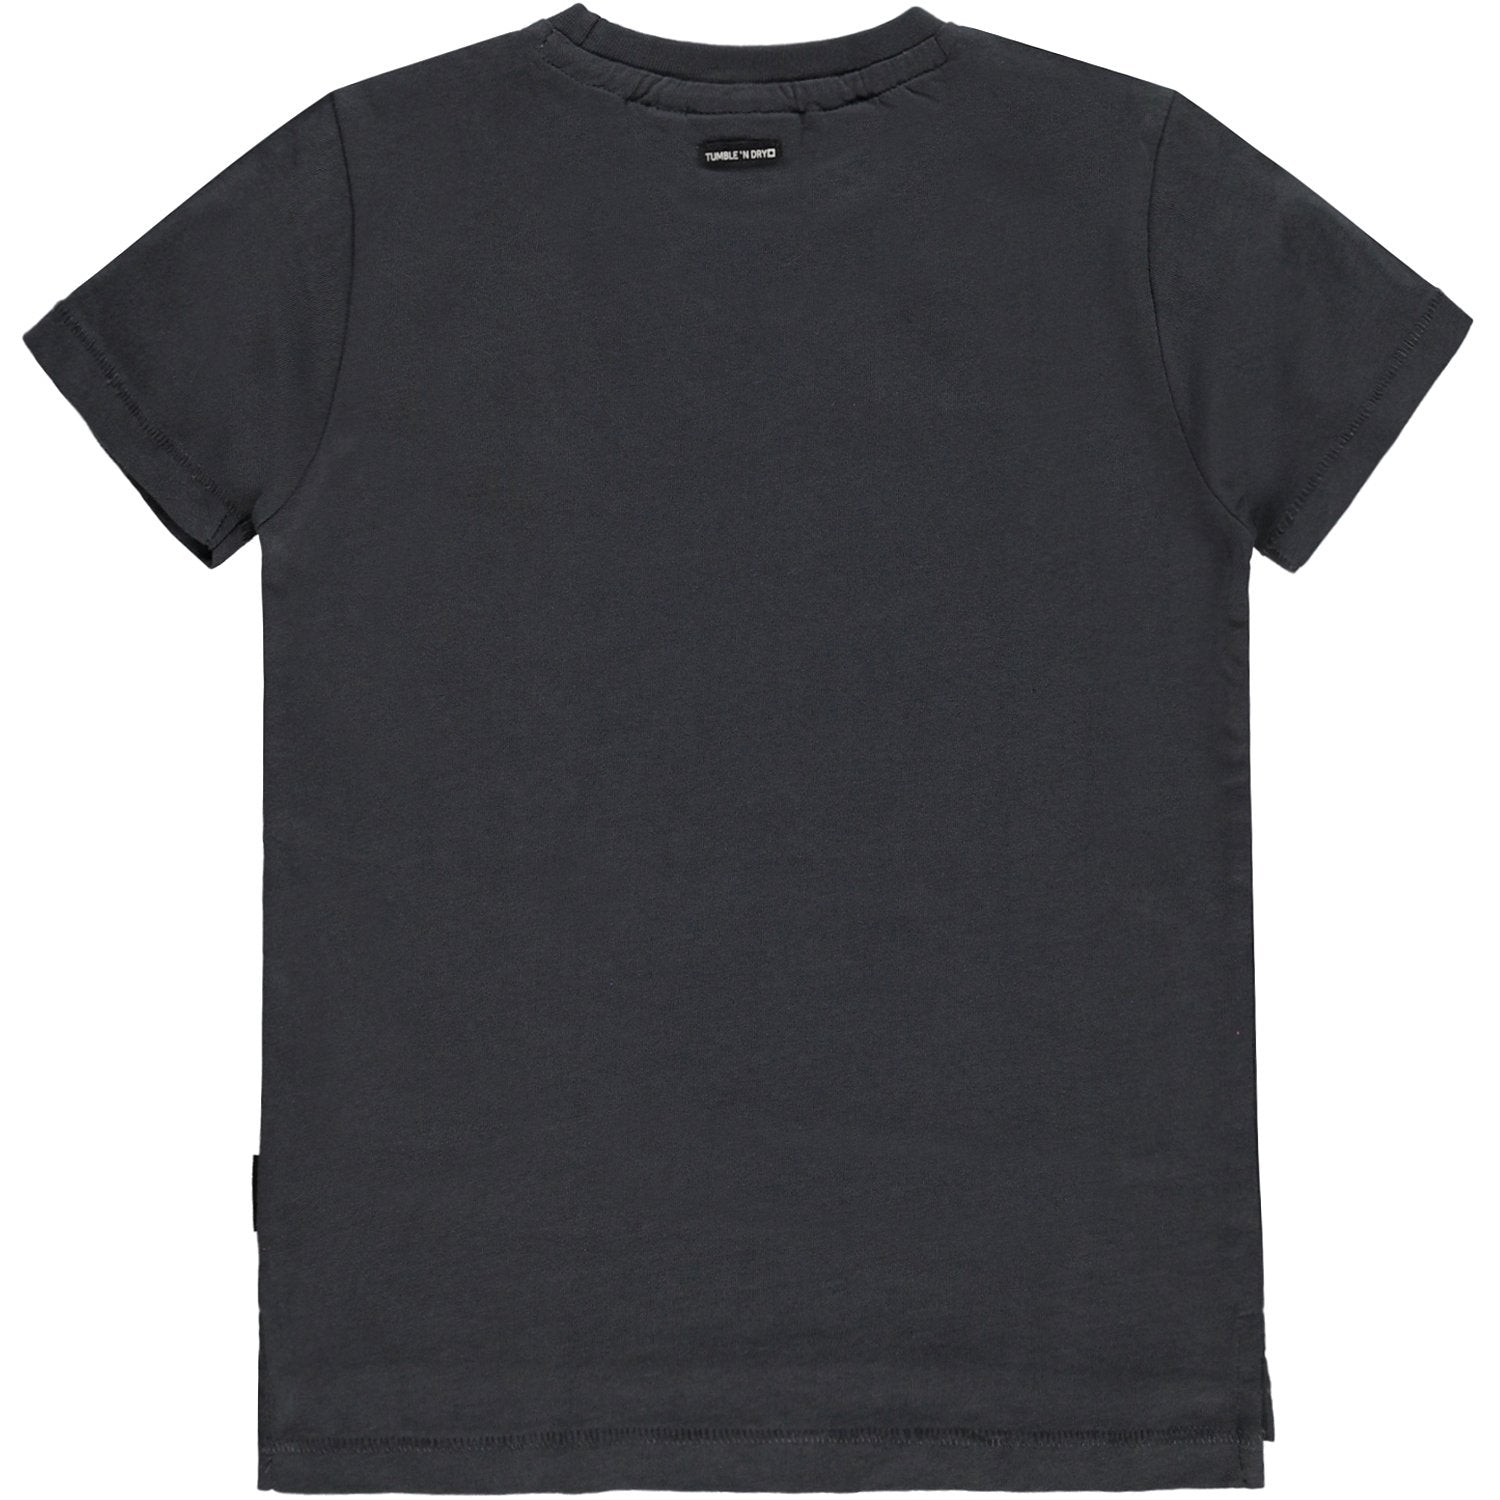 Jongens T-shirt Km O-hals van Tumble 'n Dry in de kleur Grey asphalt in maat 128.